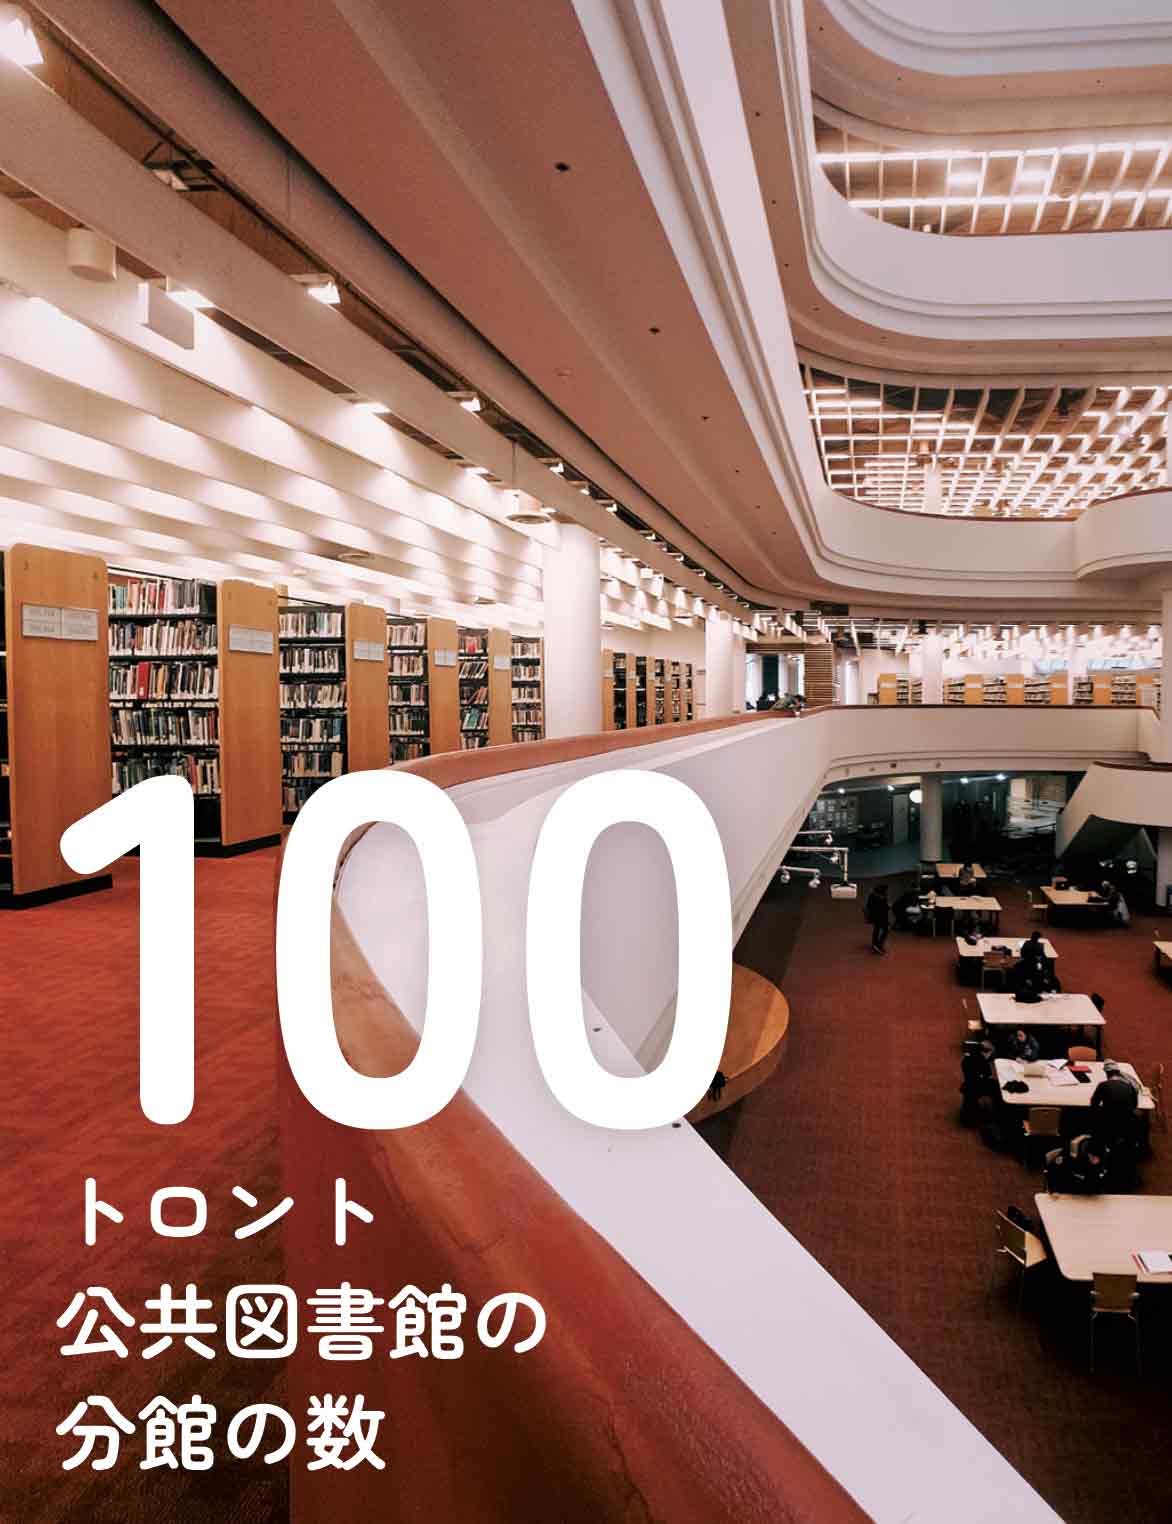 100トロント 公共図書館の 分館の数